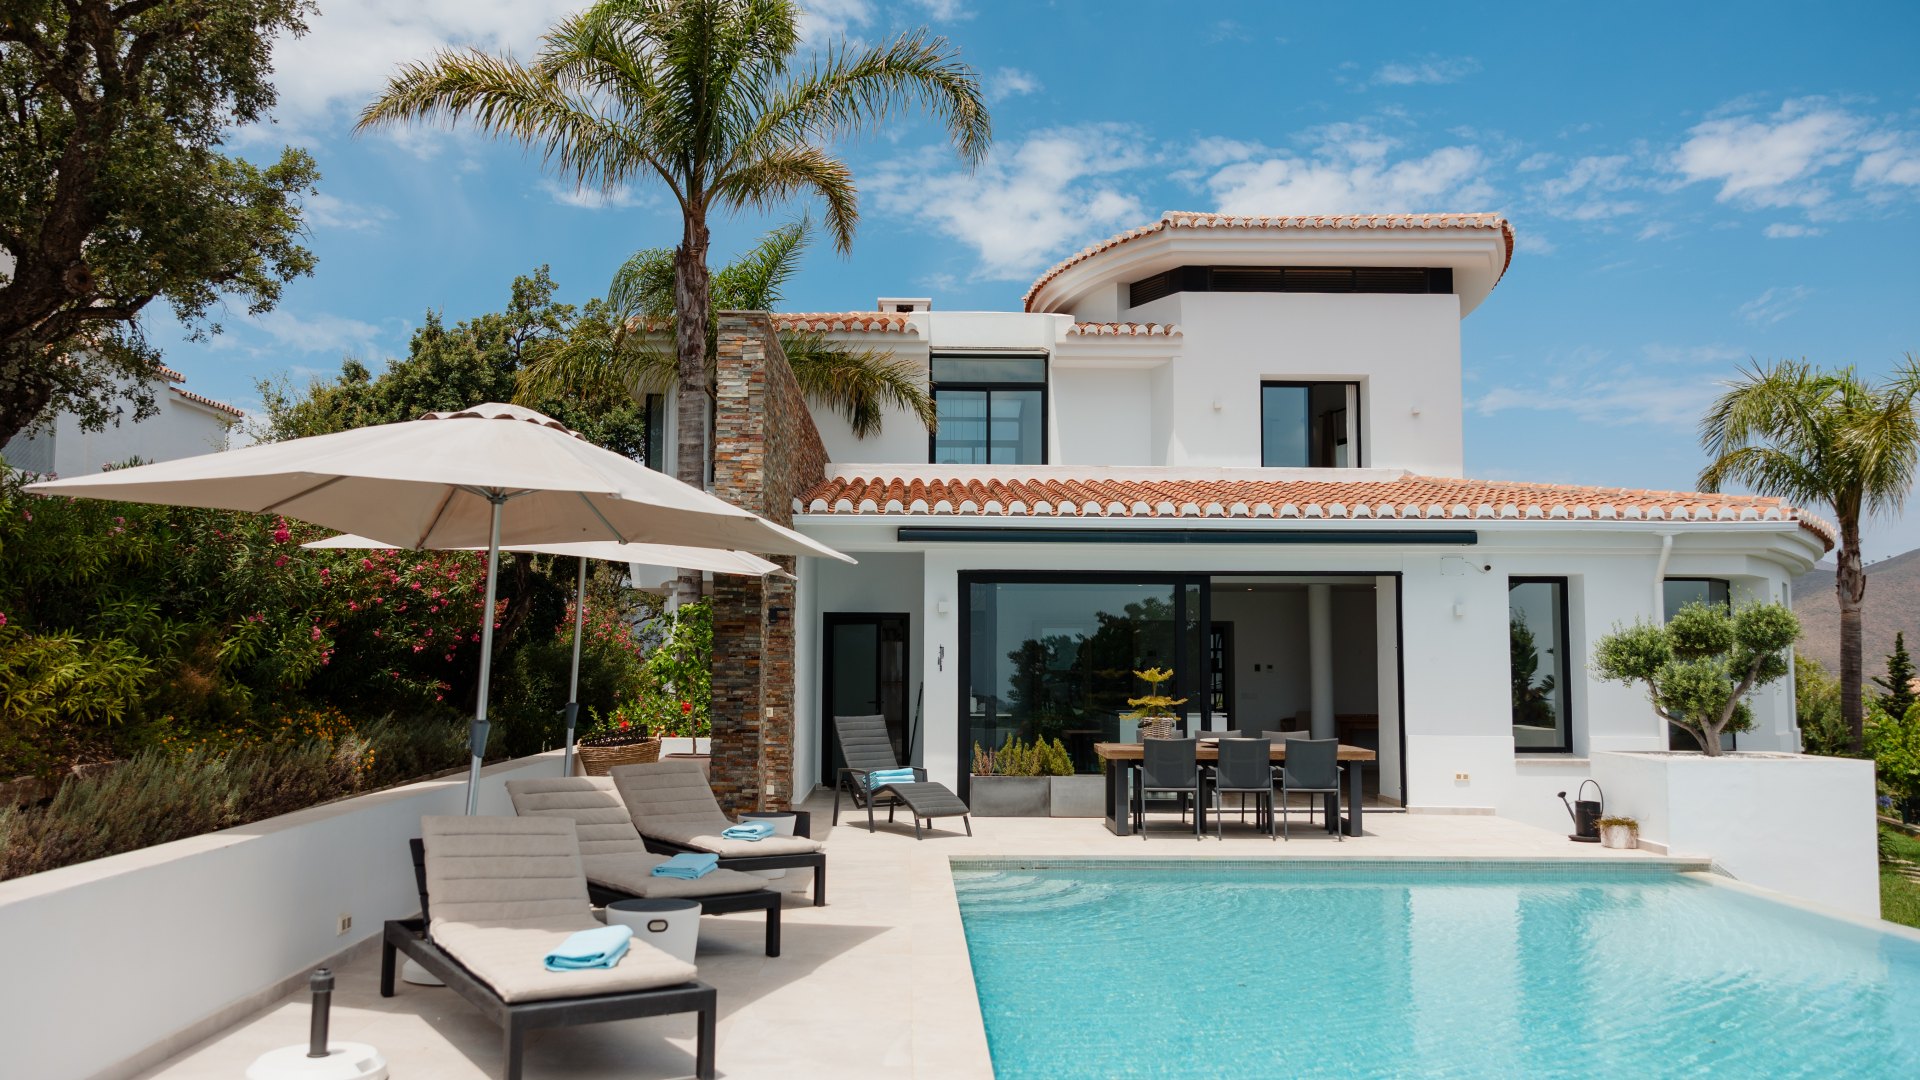 Espectacular villa, con piscina infinita y vistas al mar, en Ojén, Marbella